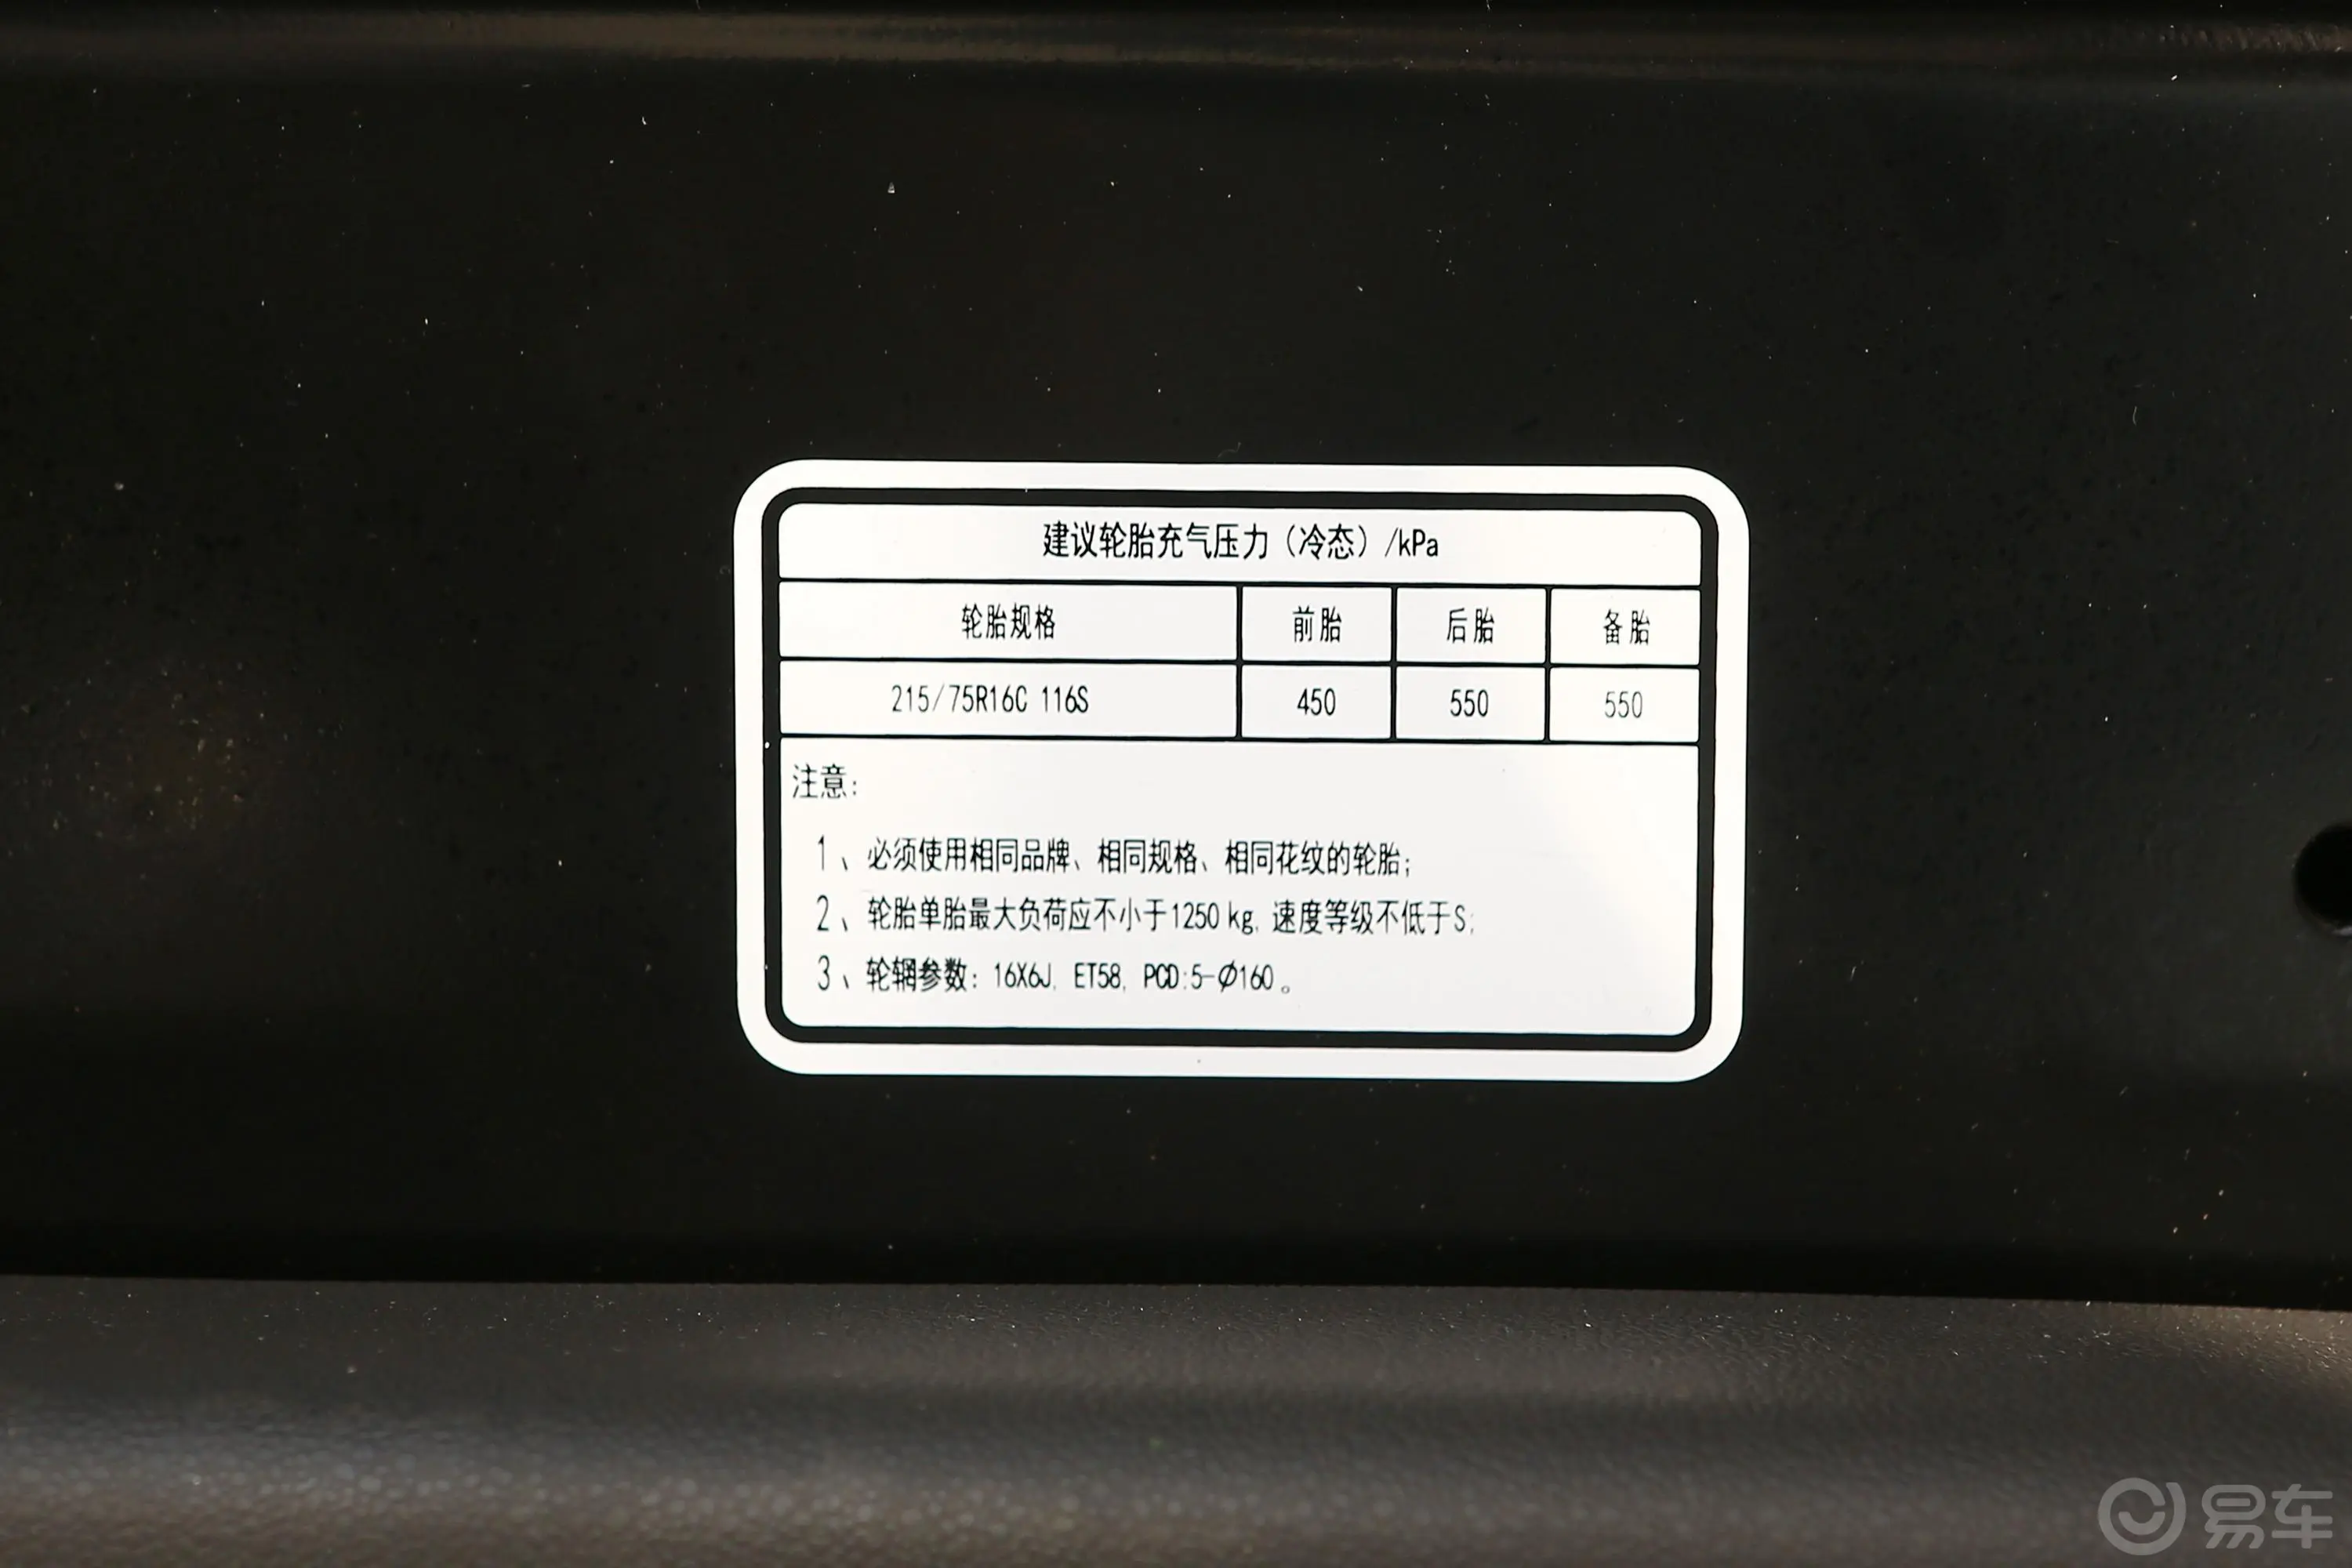 图雅诺智蓝商旅版客车 加长轴中顶 14座 79.92kWh胎压信息铭牌